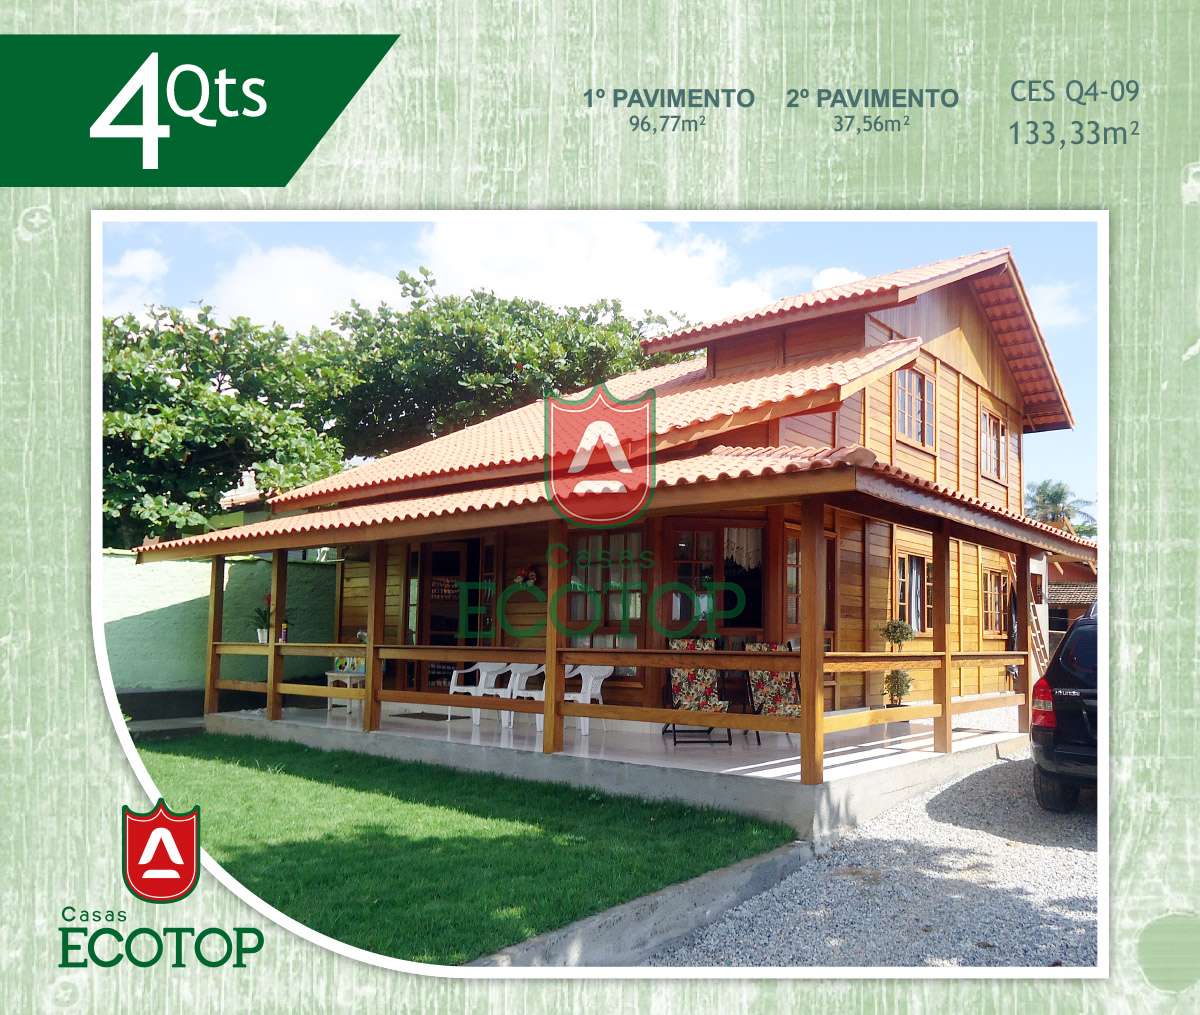 ces-09-fachada-casas-de-madeira-ecotop.cdr